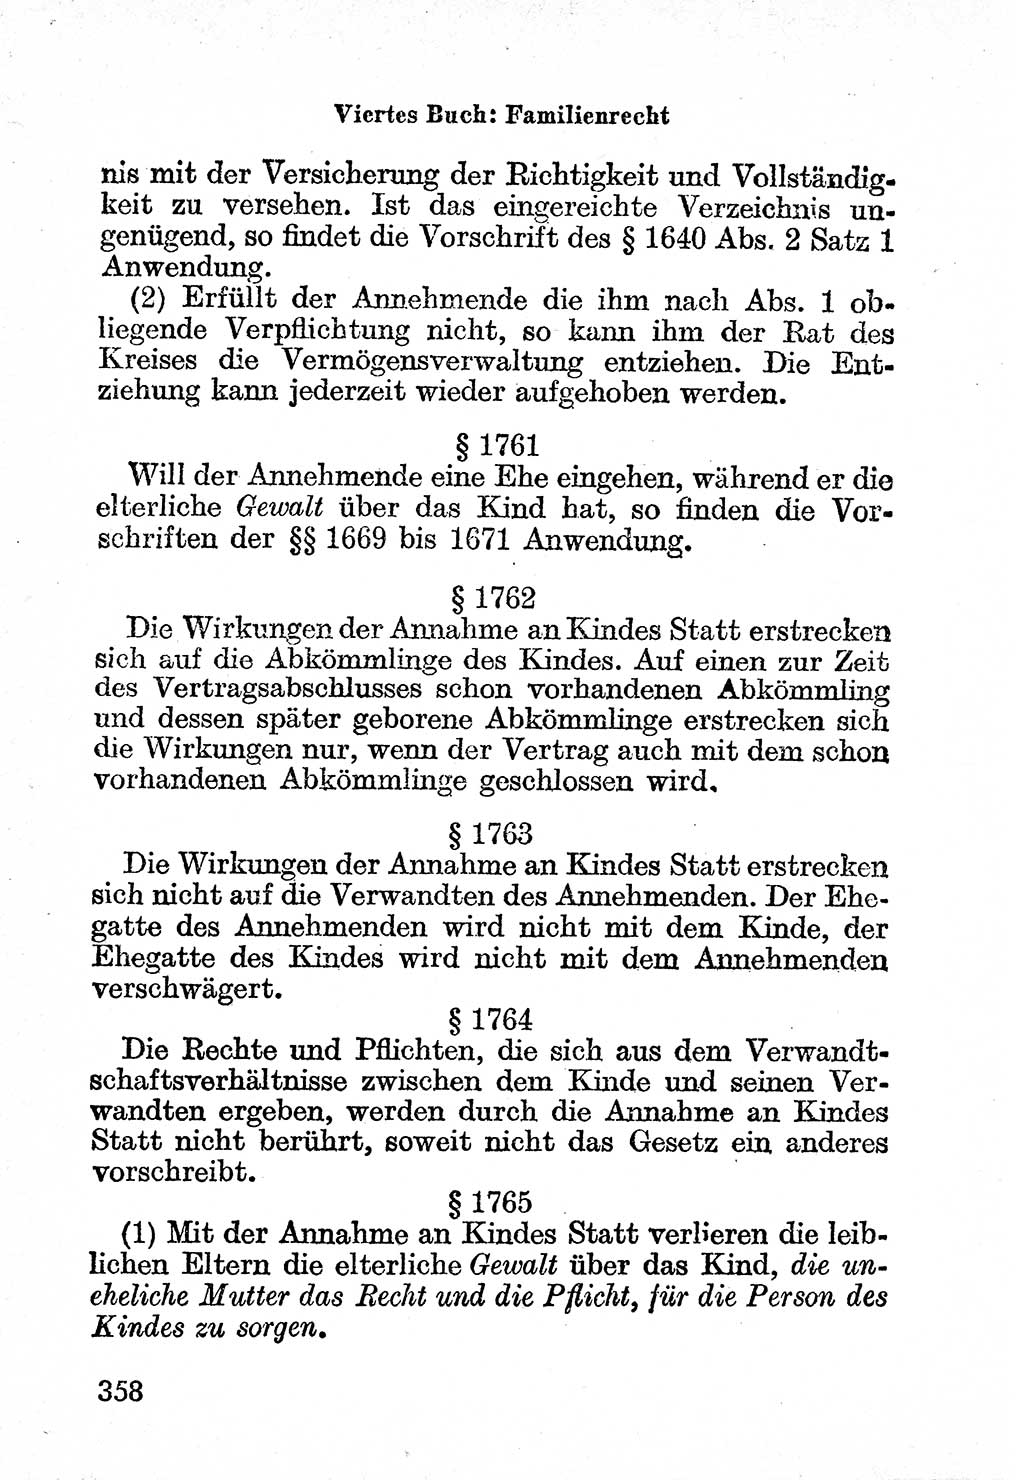 Bürgerliches Gesetzbuch (BGB) nebst wichtigen Nebengesetzen [Deutsche Demokratische Republik (DDR)] 1956, Seite 358 (BGB Nebenges. DDR 1956, S. 358)